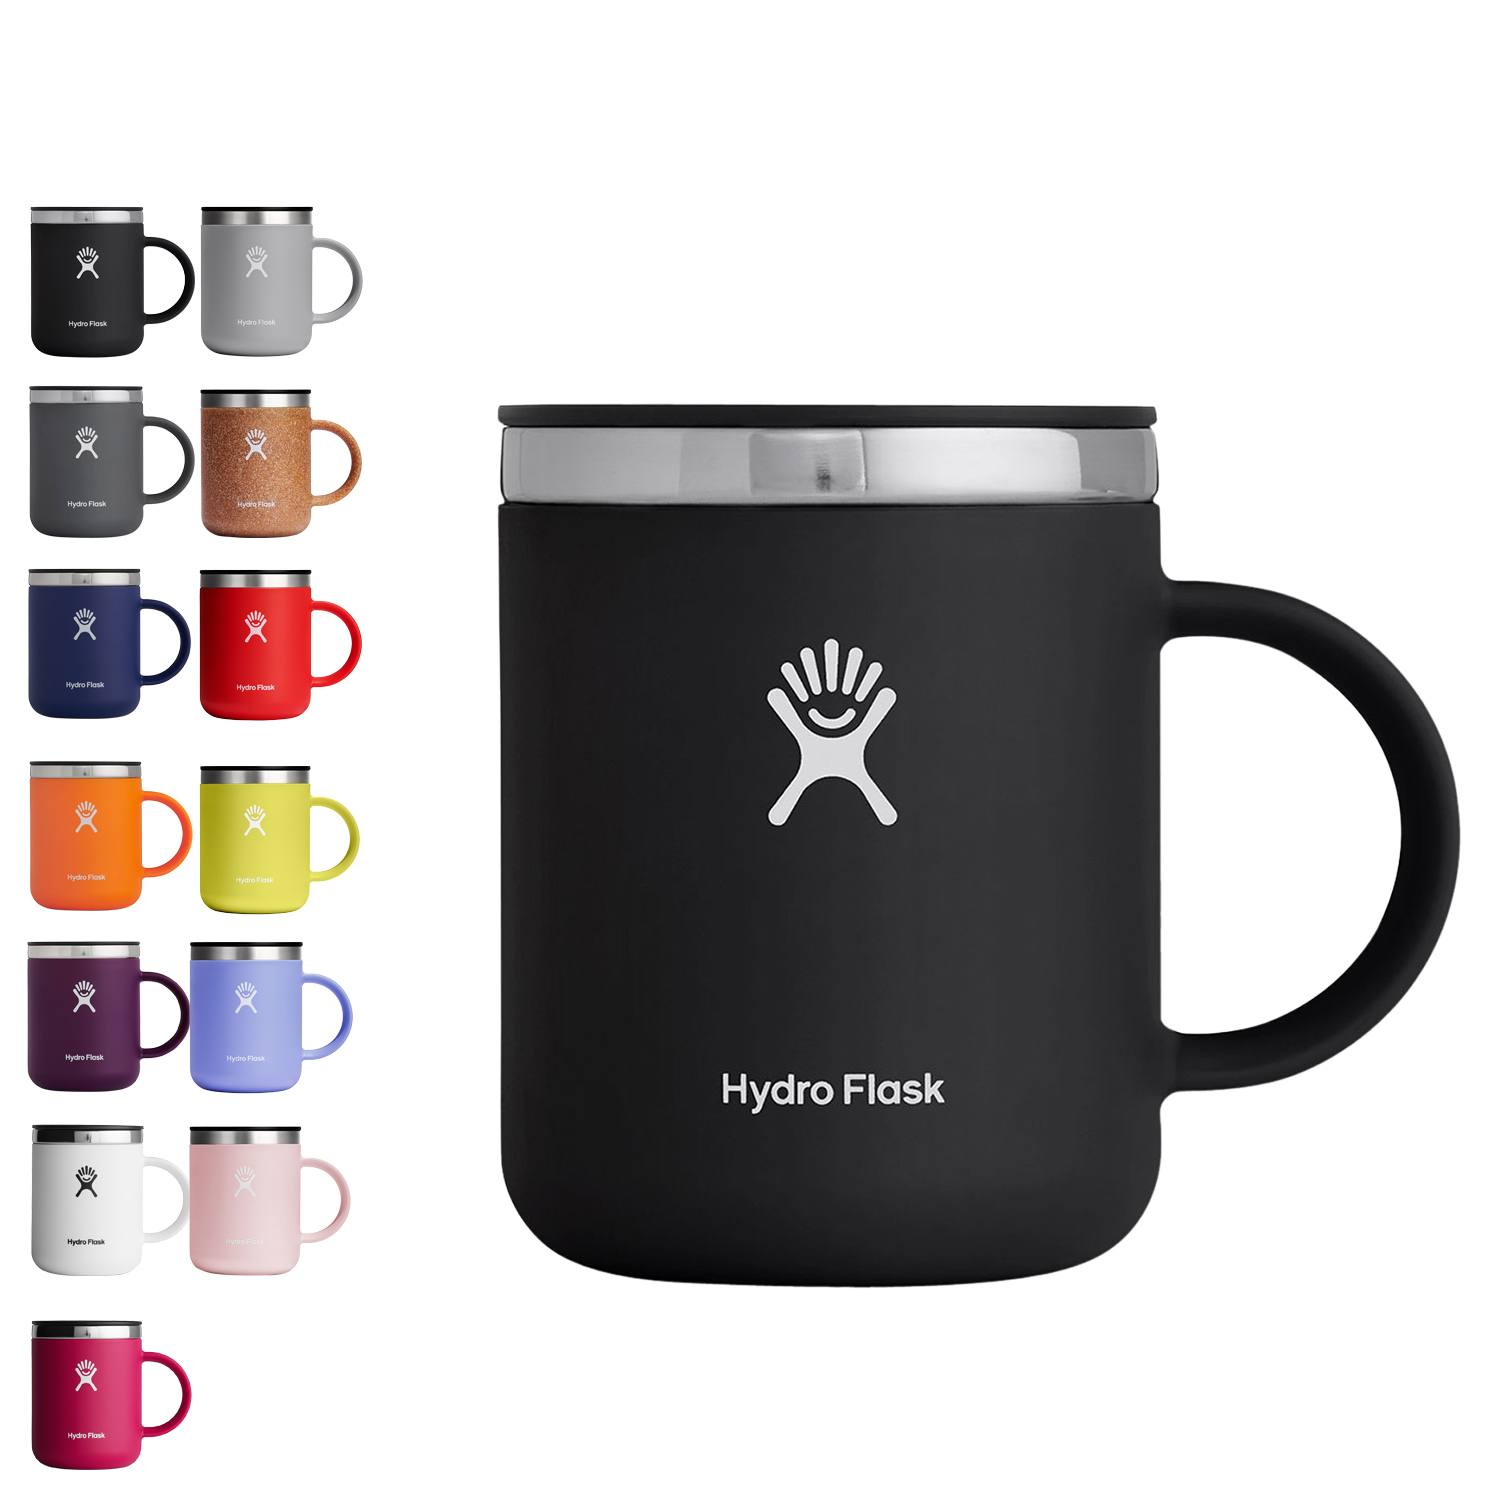 ハイドロフラスク Hydro Flask コーヒーマグ マグカップ コーヒーカップ 保温 ステンレス フタ付 CLOSEABLE COFFEE MUG ブラック グレー ネイビー オレンジ パープル 黒 5089331 アウトドア画像